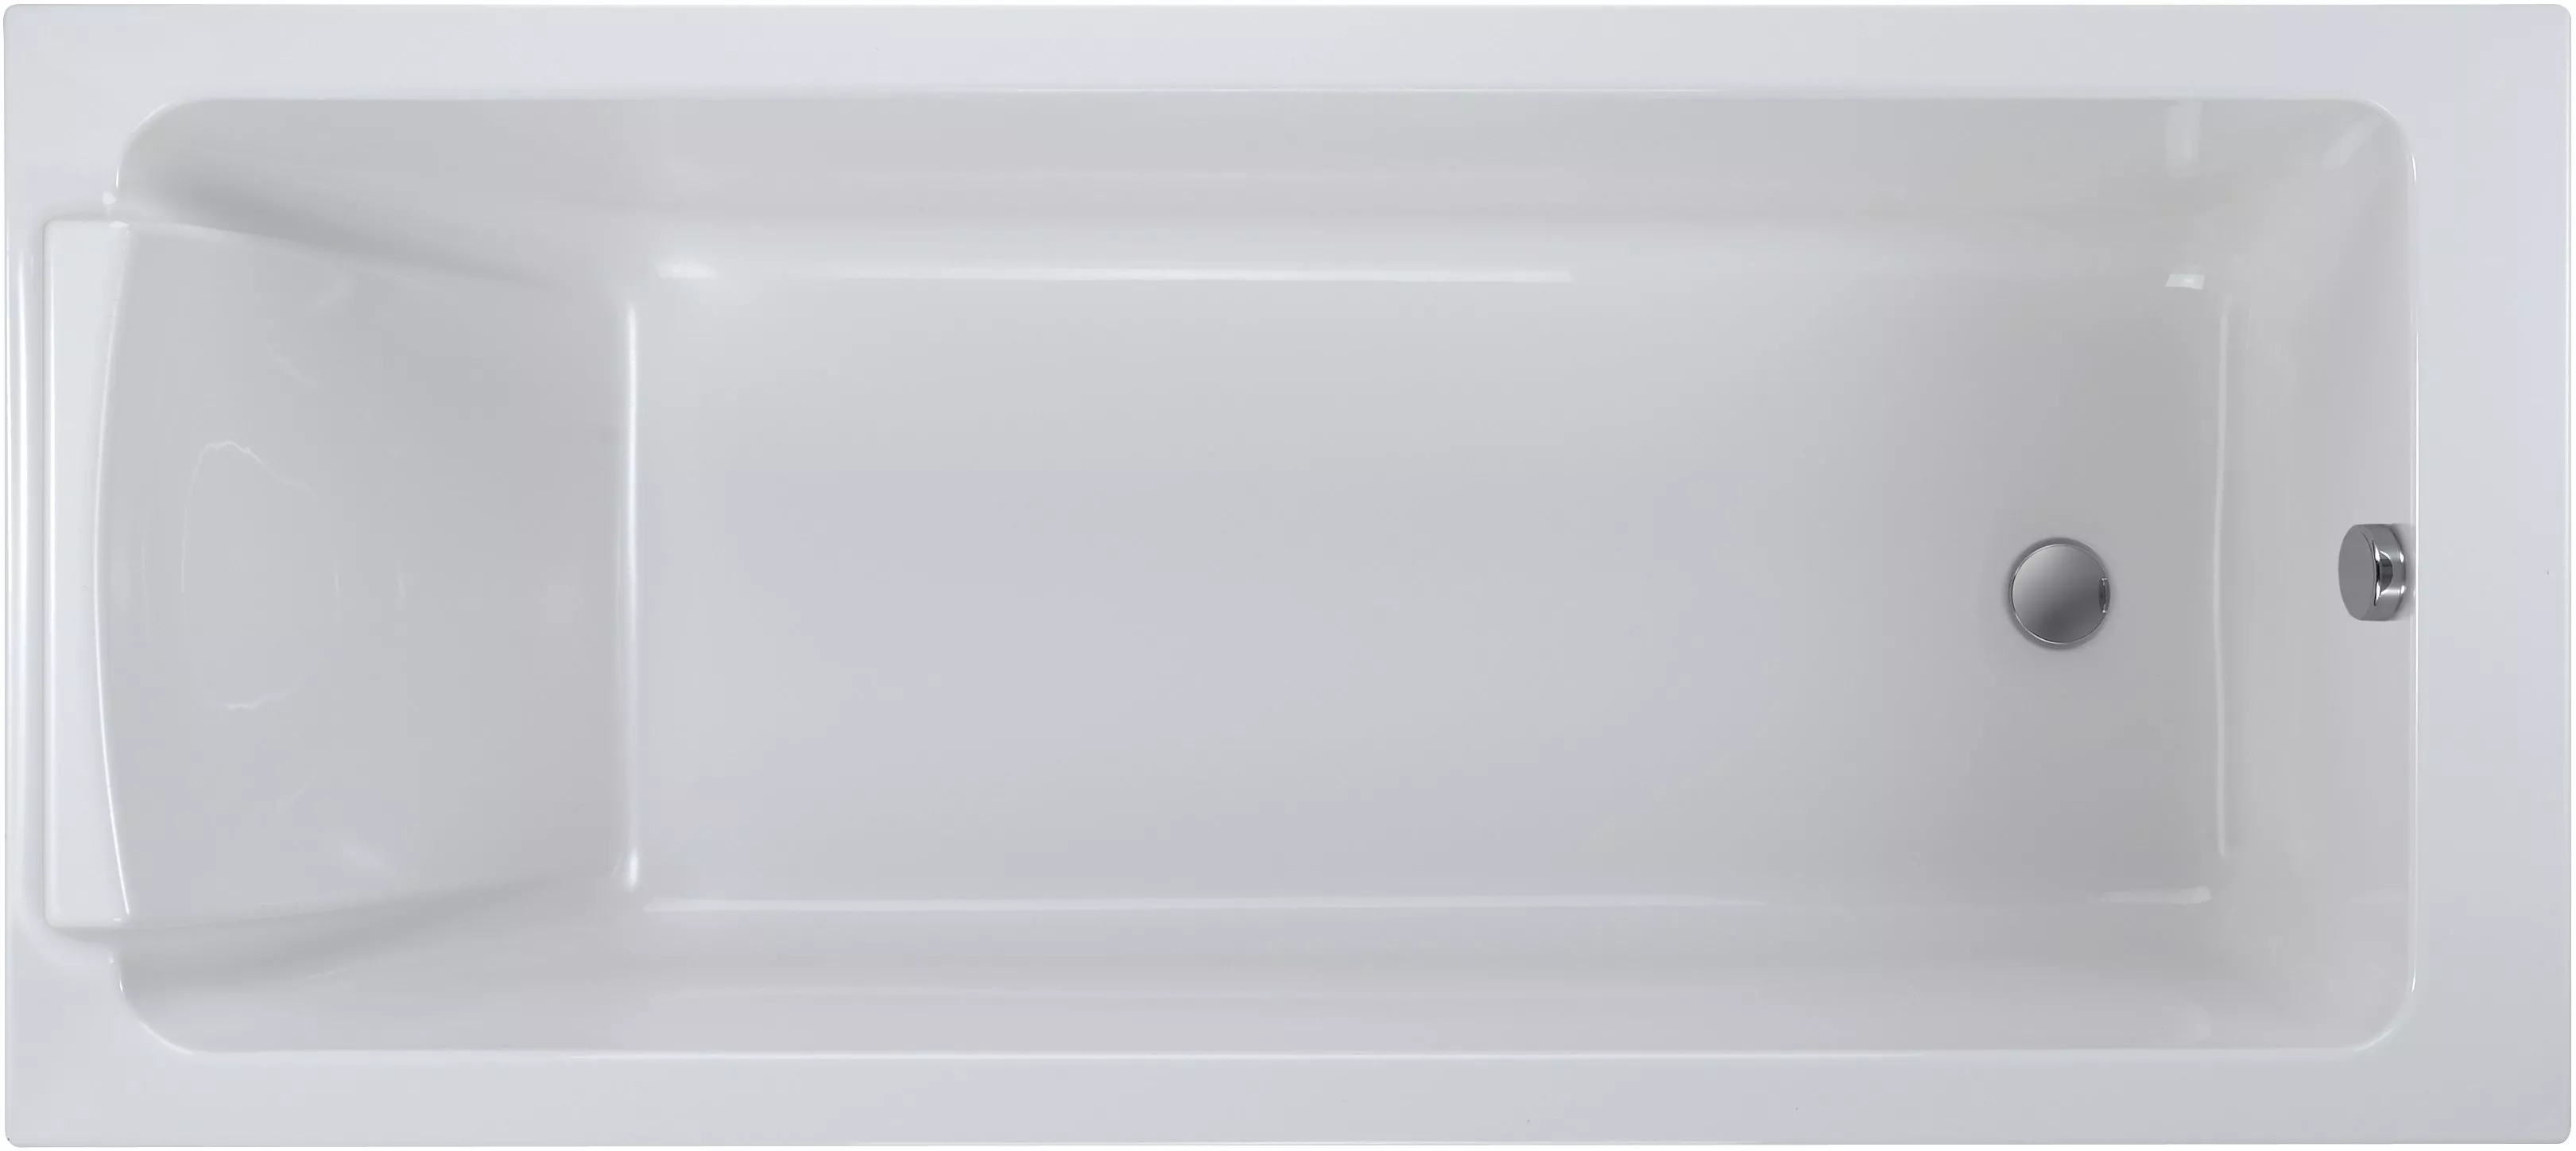 Акриловая ванна Jacob Delafon Sofa 170x70, цвет белый E60518RU-00 - фото 1